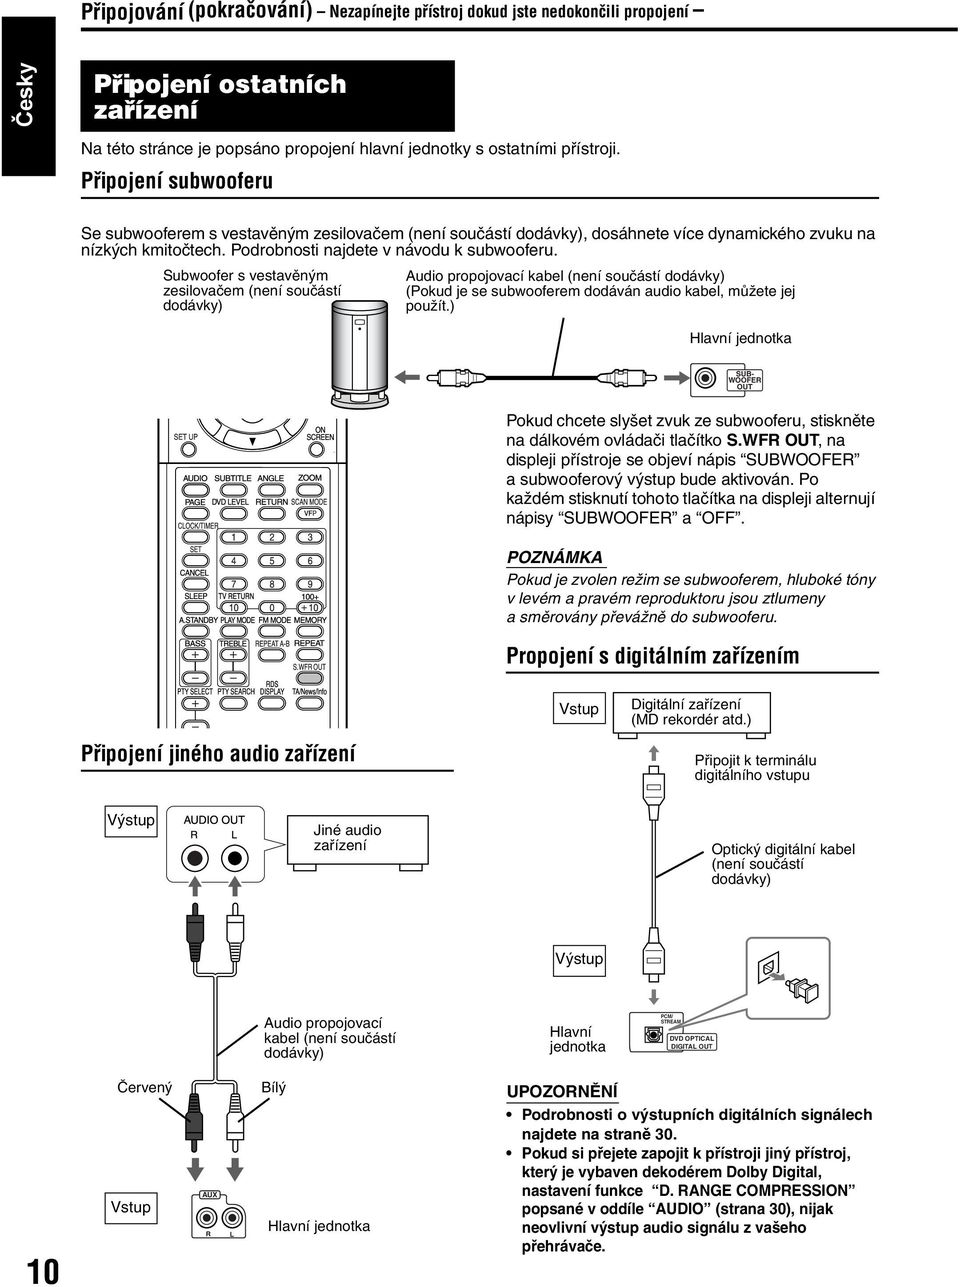 Subwoofer s vestavěným zesilovačem (není součástí dodávky) Audio propojovací kabel (není součástí dodávky) (Pokud je se subwooferem dodáván audio kabel, můžete jej použít.